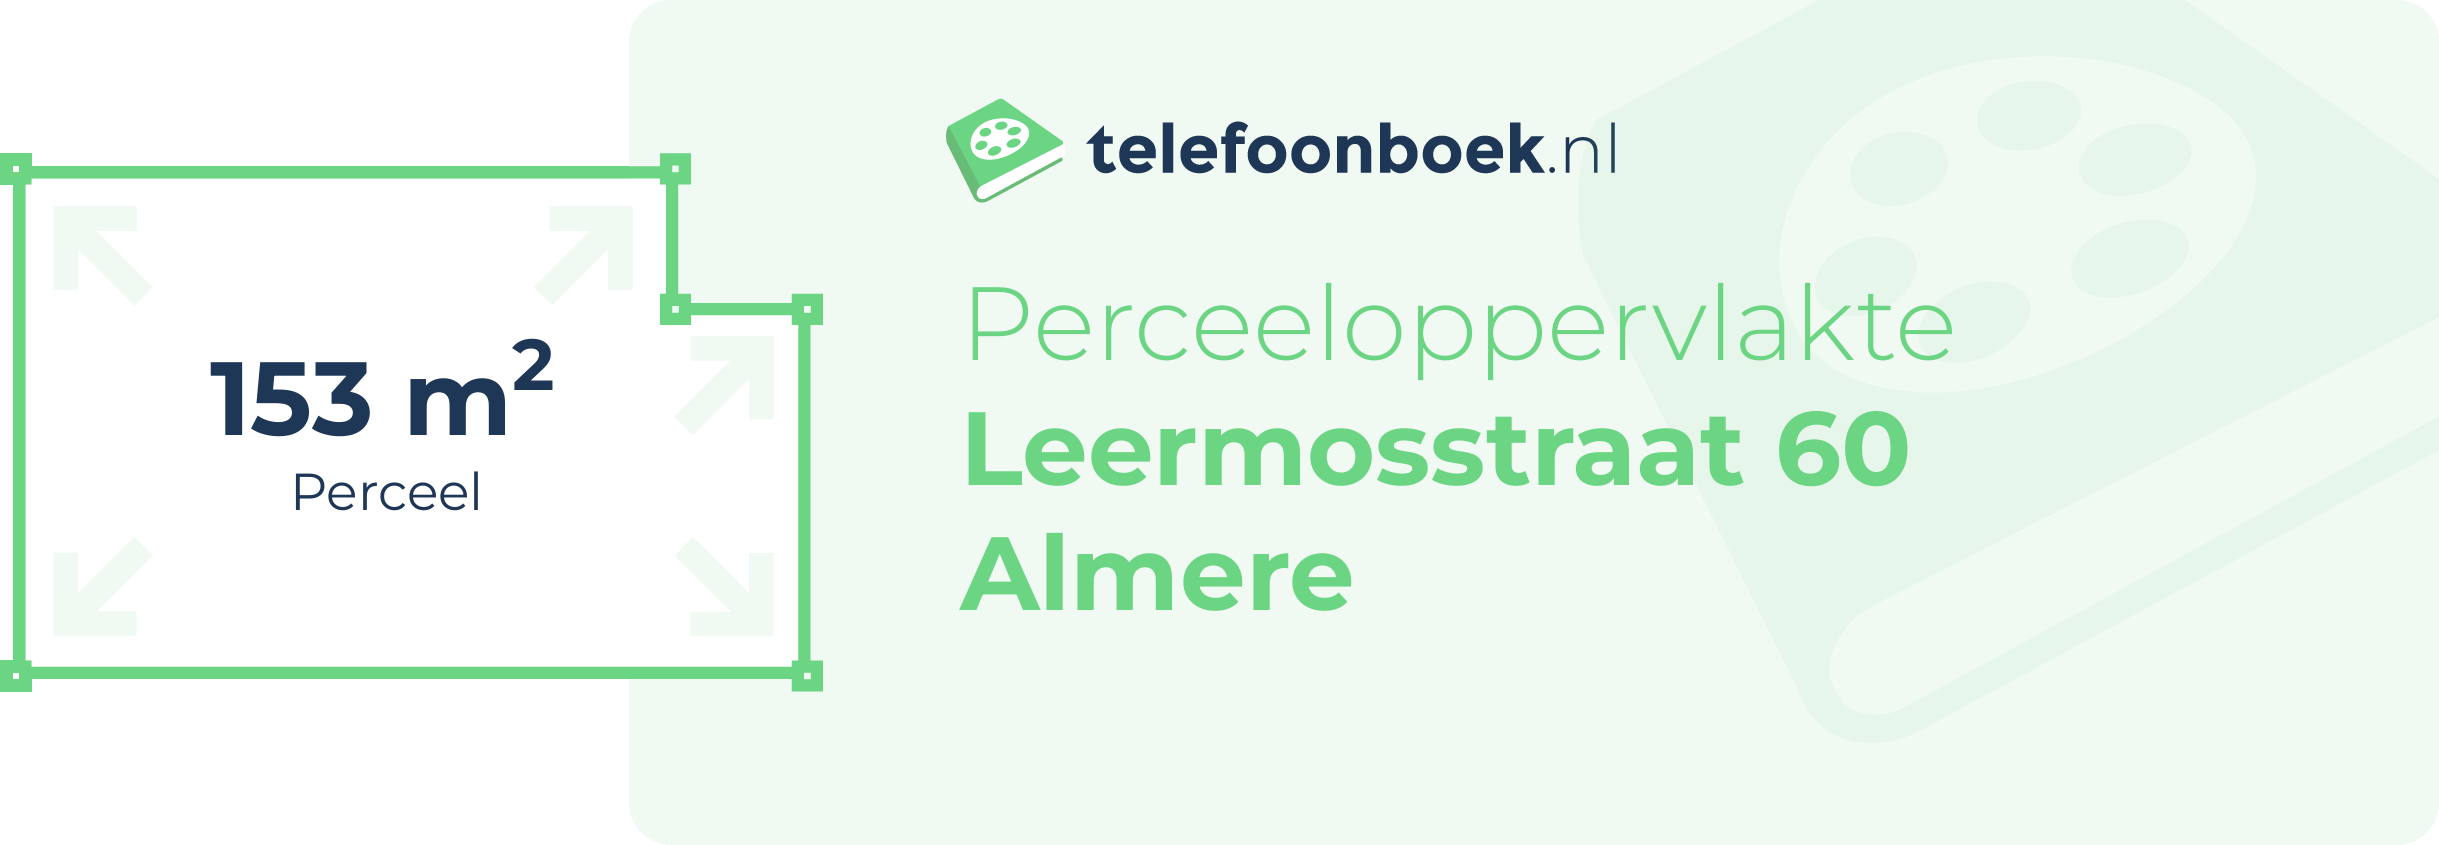 Perceeloppervlakte Leermosstraat 60 Almere